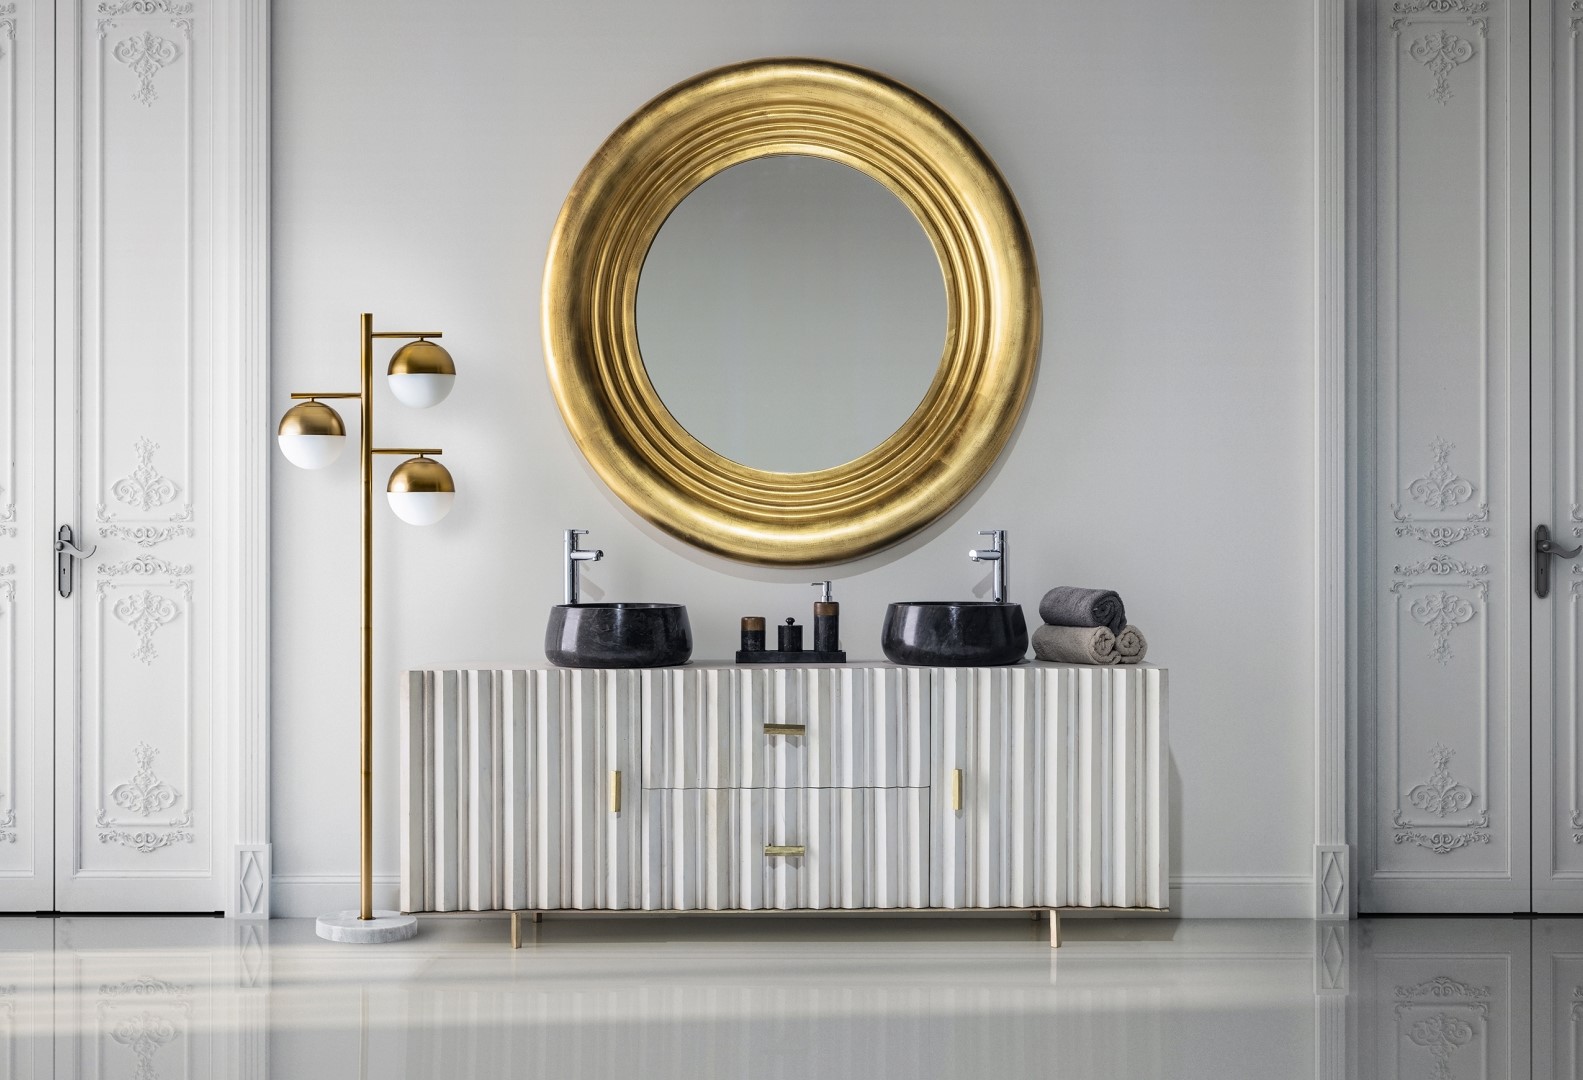 Art deco nábytok do kúpelne v krémovej bielej farbe so zlatým vzorom